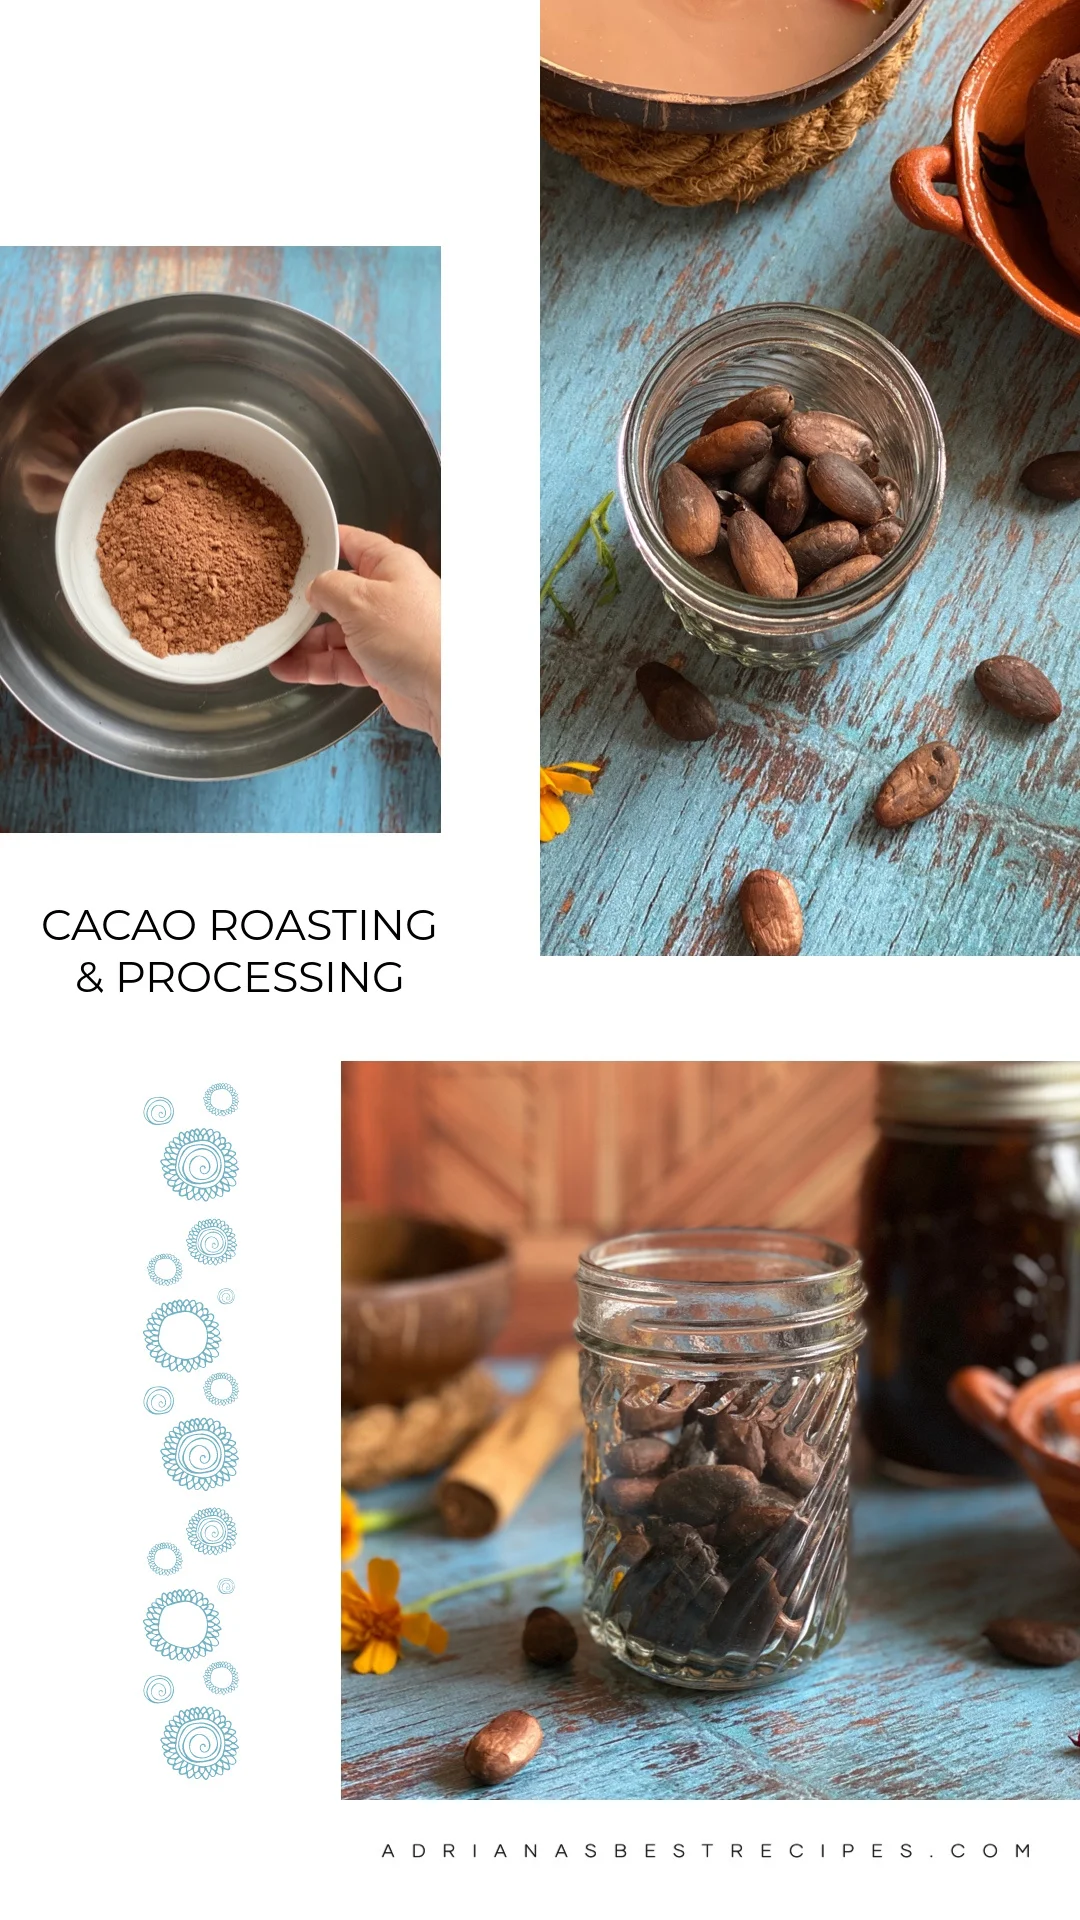 Un collage que muestra imágenes de tostado y procesamiento de cacao en casa